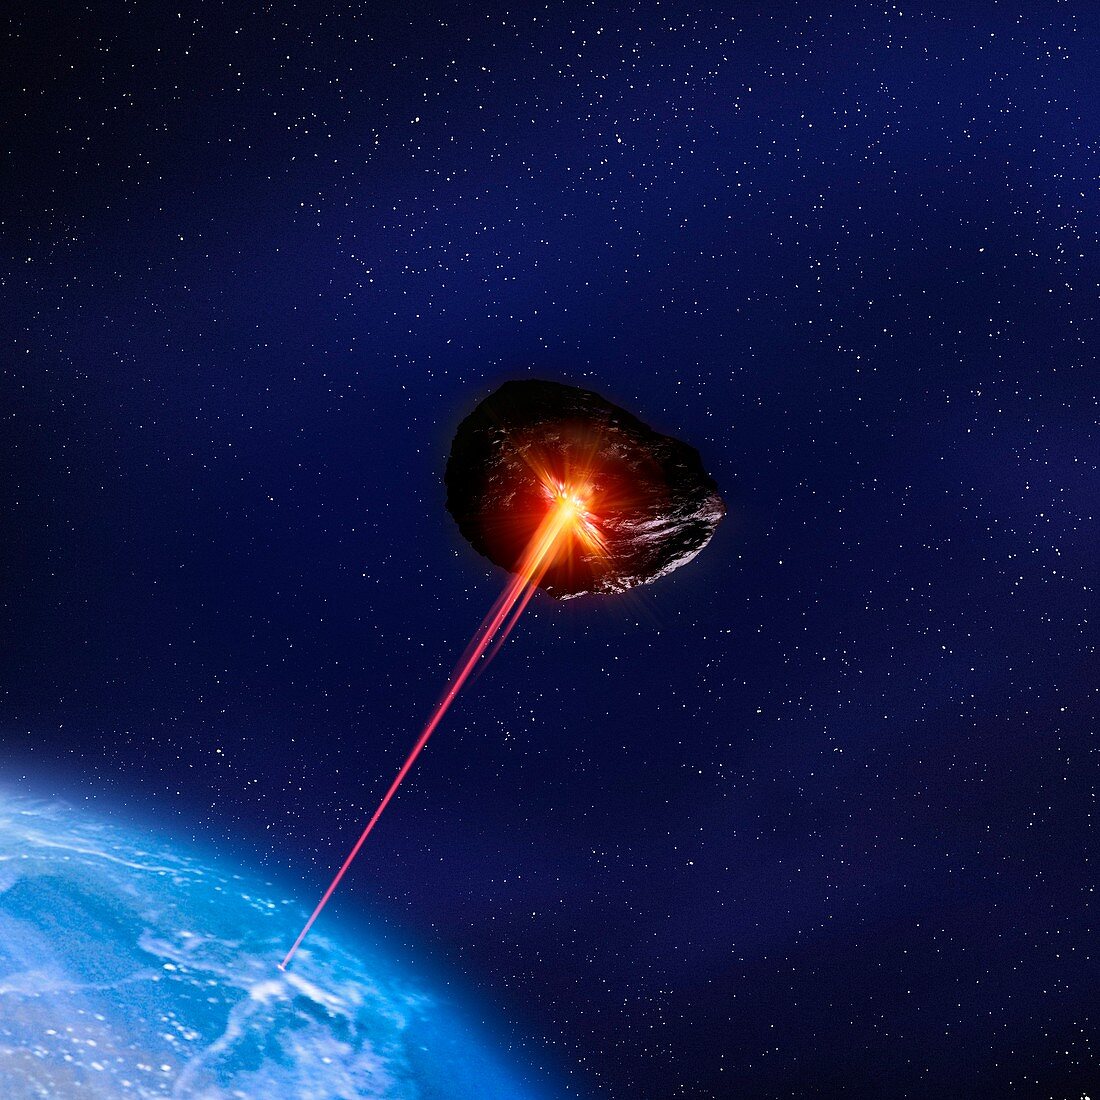 Asteroid deflection,illustration